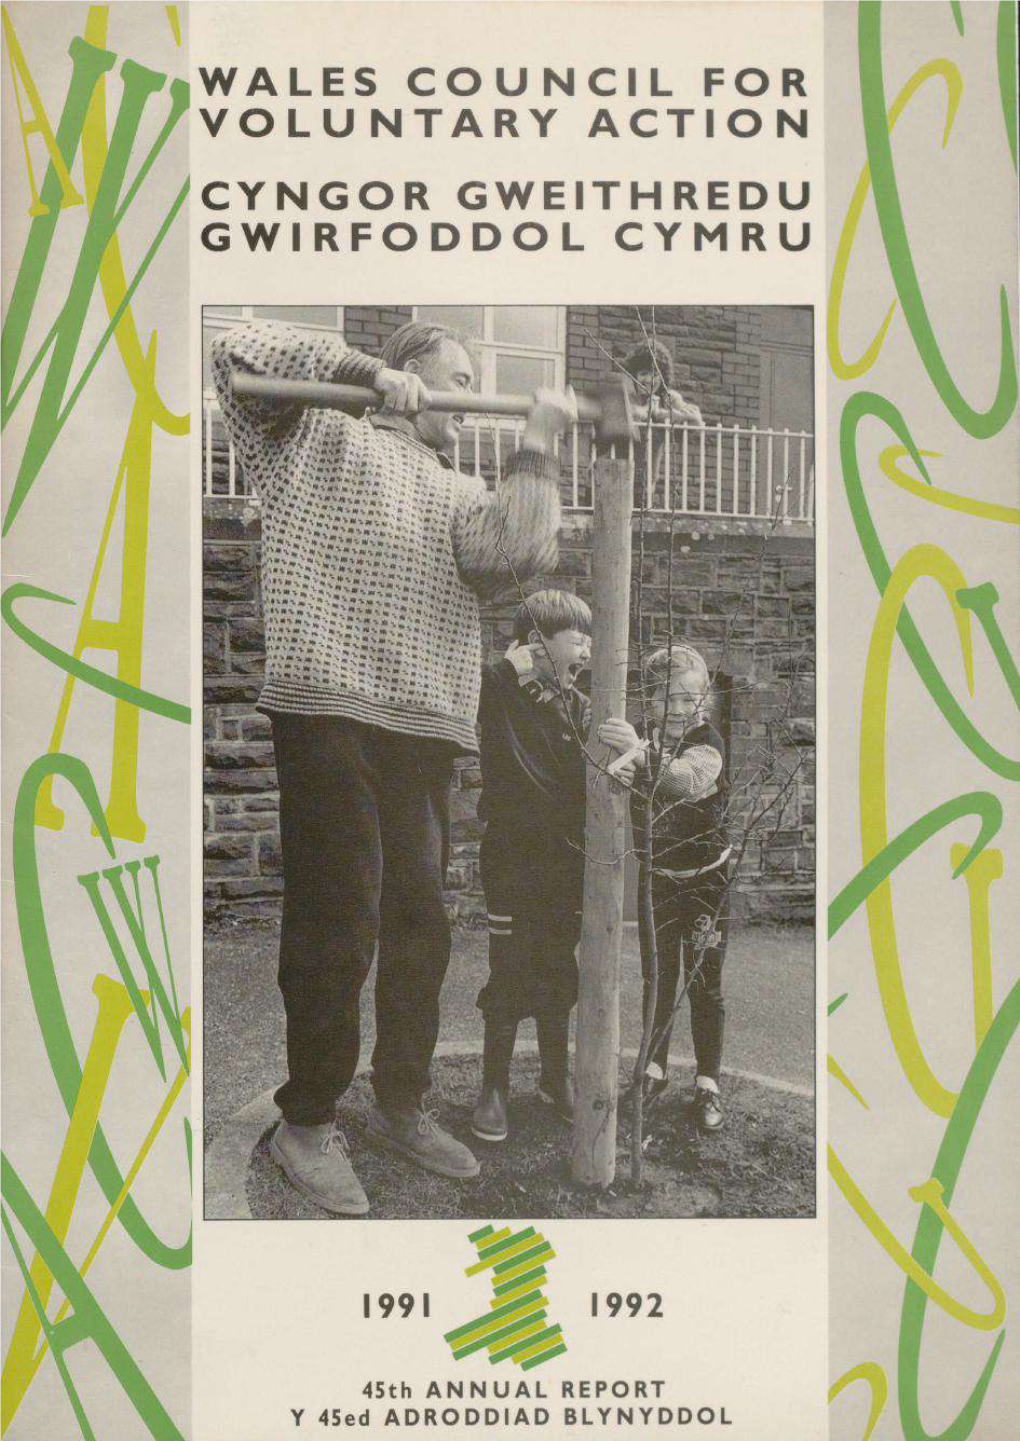 Wales Council for Voluntary Action Cyngor Gweithredu Gwirfoddol Cymru Llys Ifor Llys Ifor